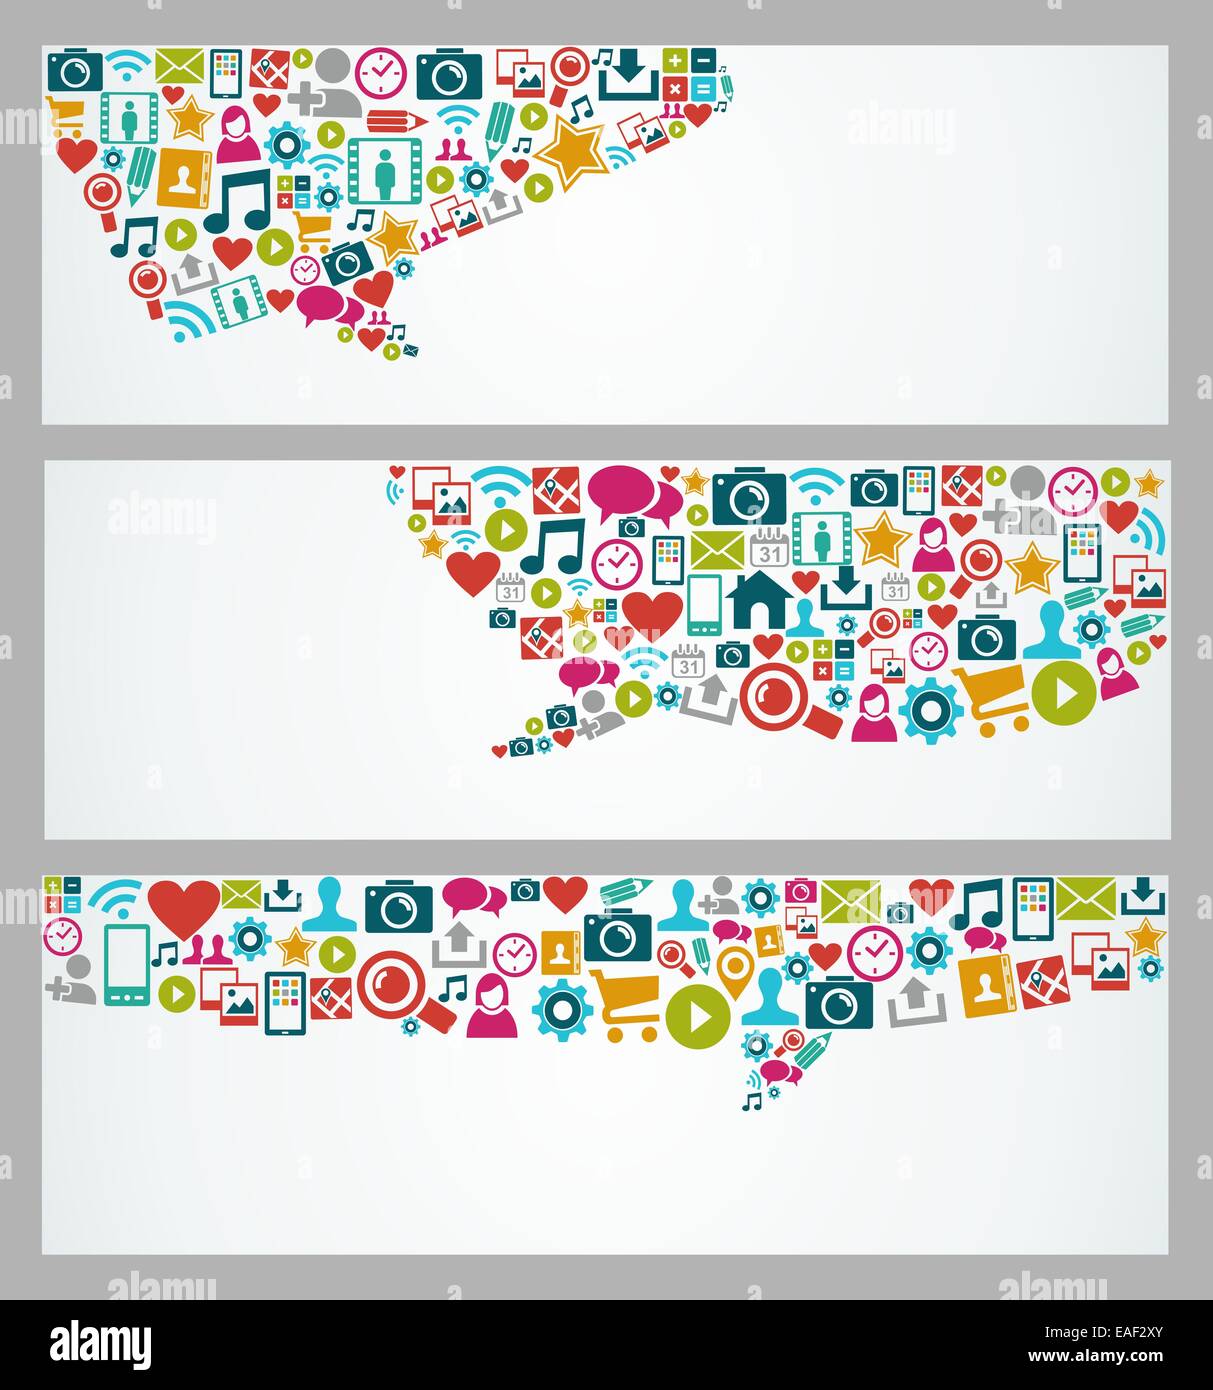 Social Media bannières web et multimédia réseau avec set d'icônes dans la composition de la forme bulle. Fichier vectoriel EPS10 avec transp Banque D'Images